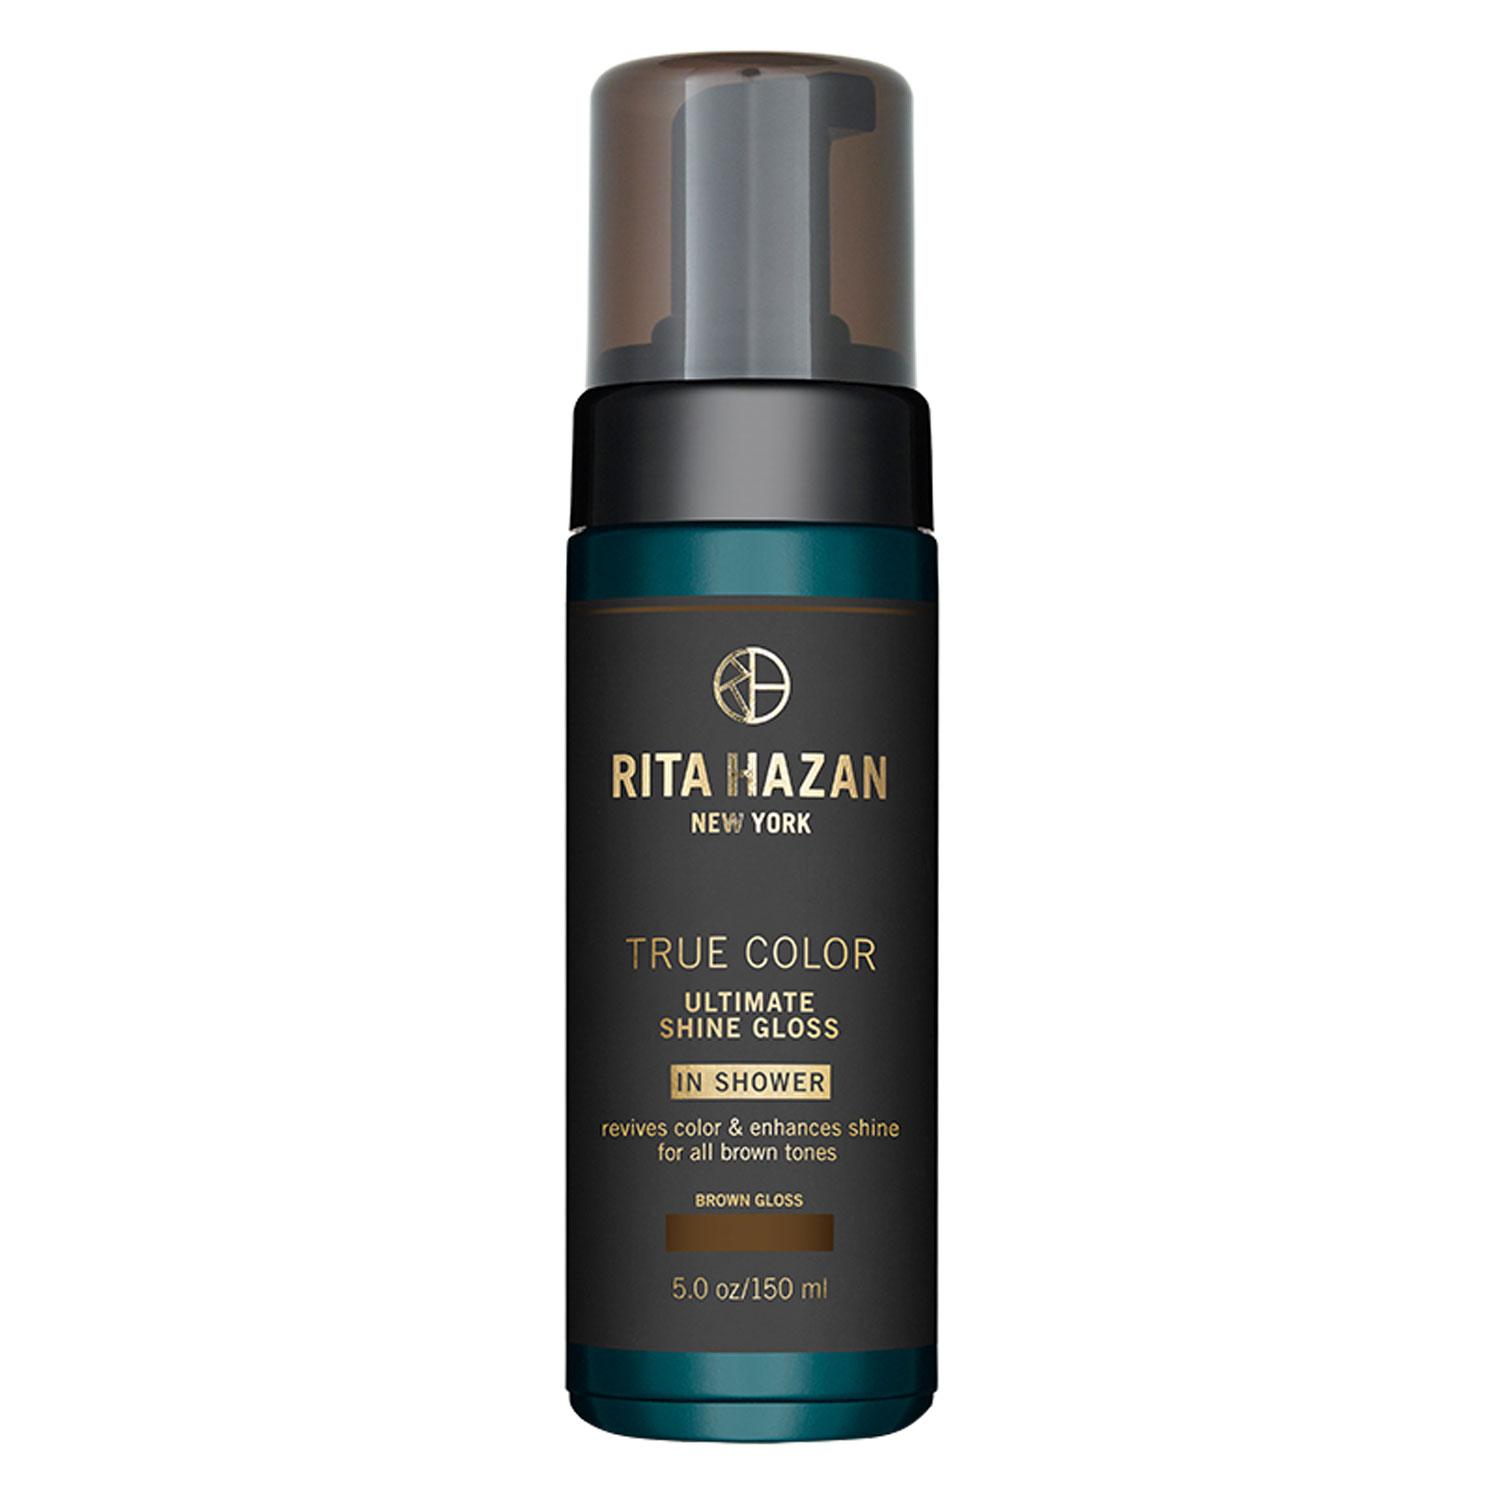 Rita Hazan New York - True Color Ultimate Shine Gloss Brown